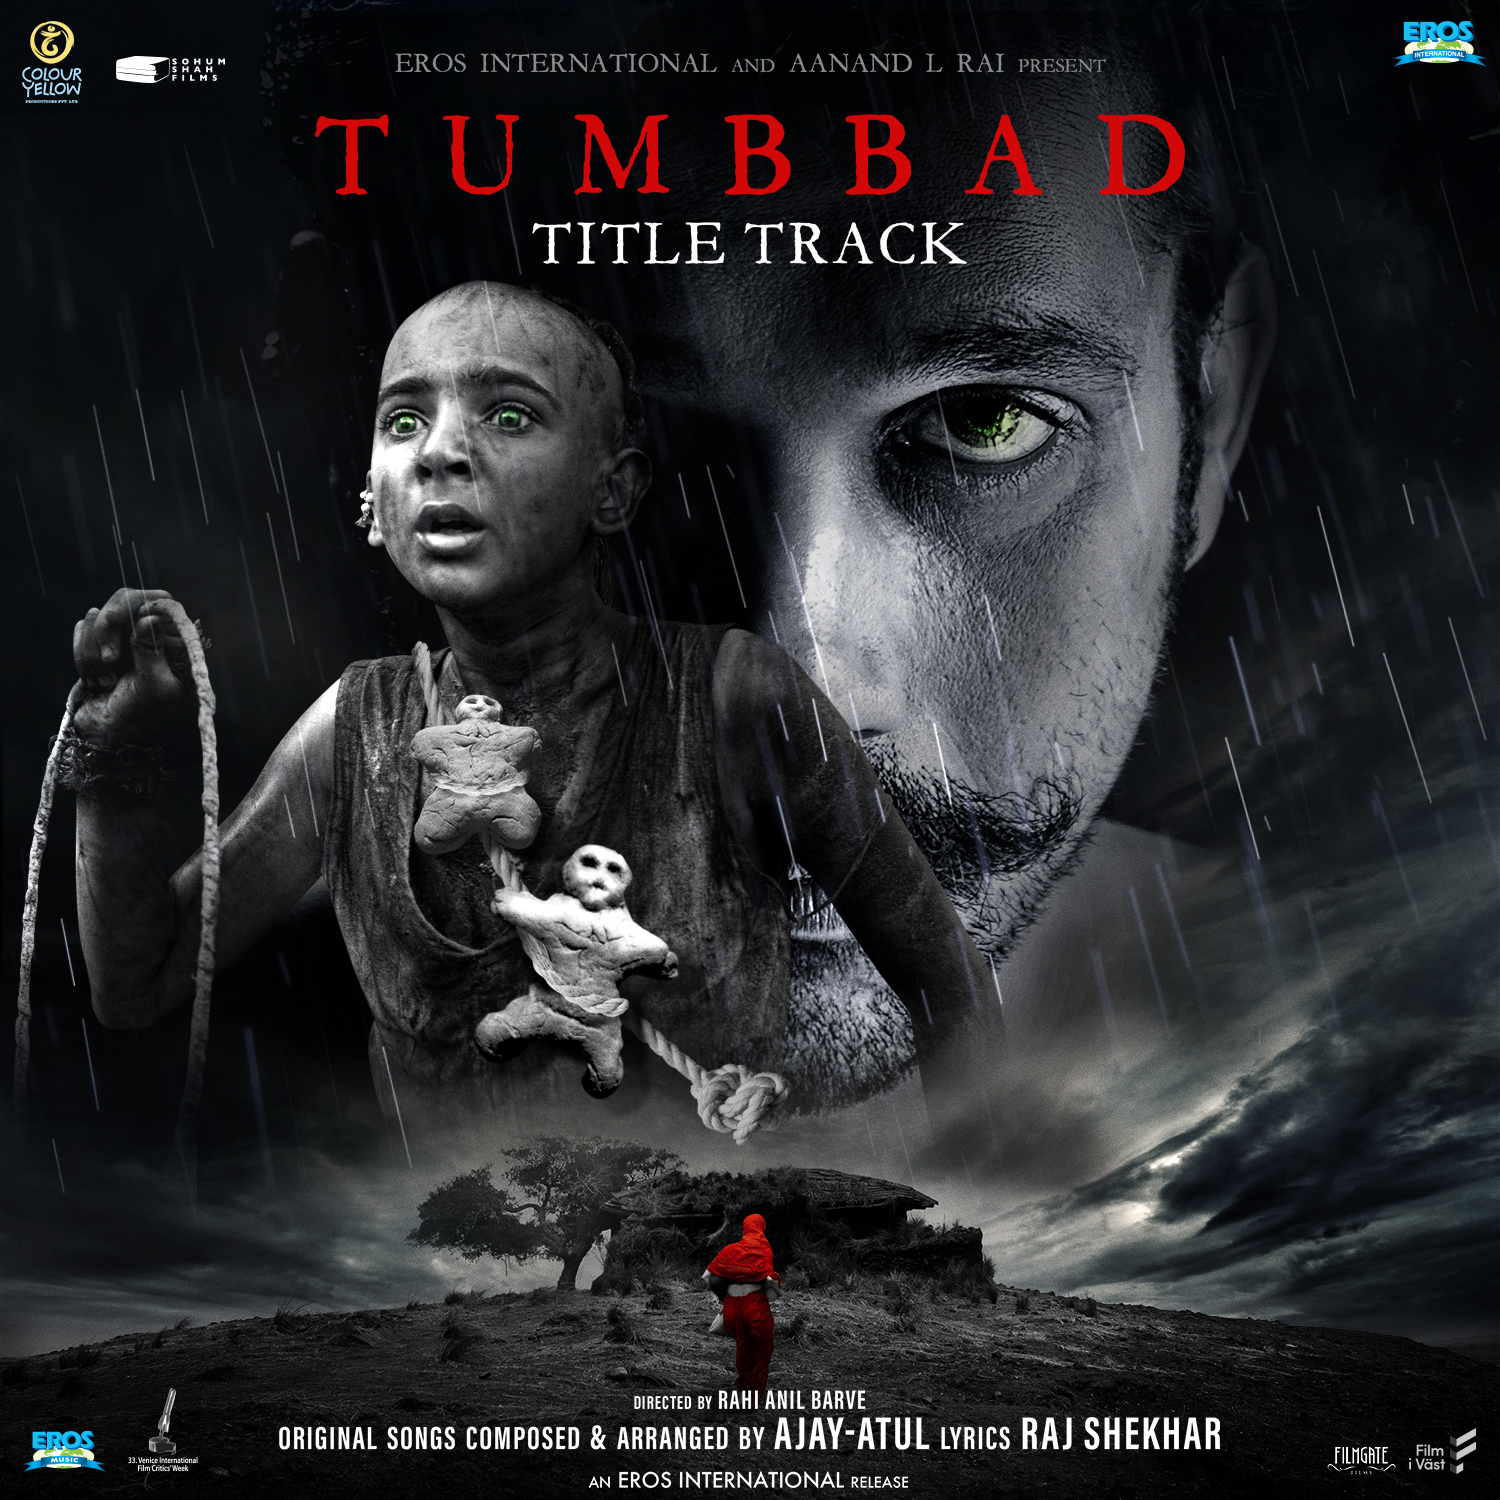 Tumbbad - Title Track (From "Tumbbad")